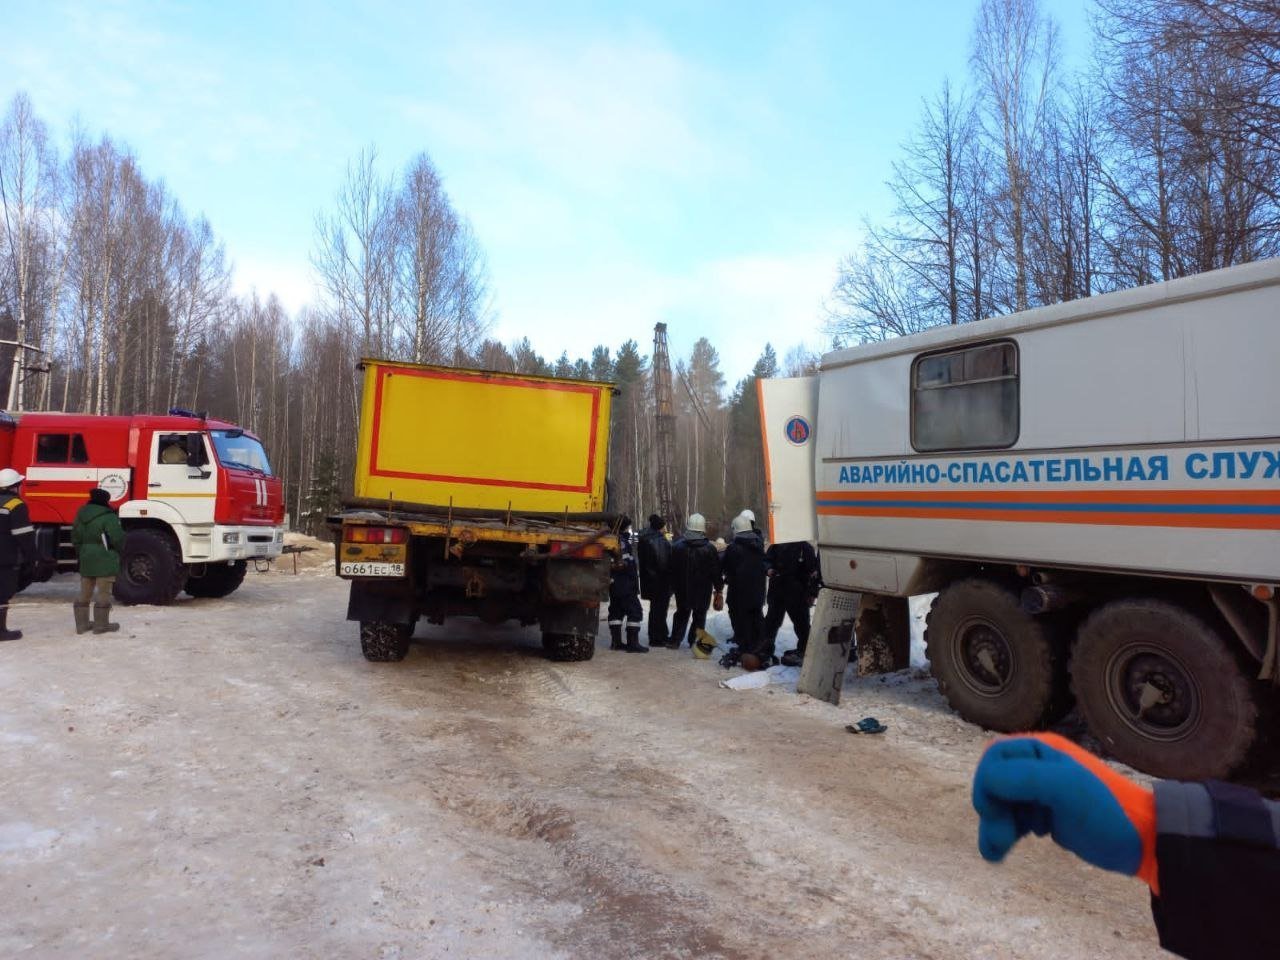 Итоги дня: разлив нефти на месторождении в Удмуртии и новый глава Устиновского района Ижевска